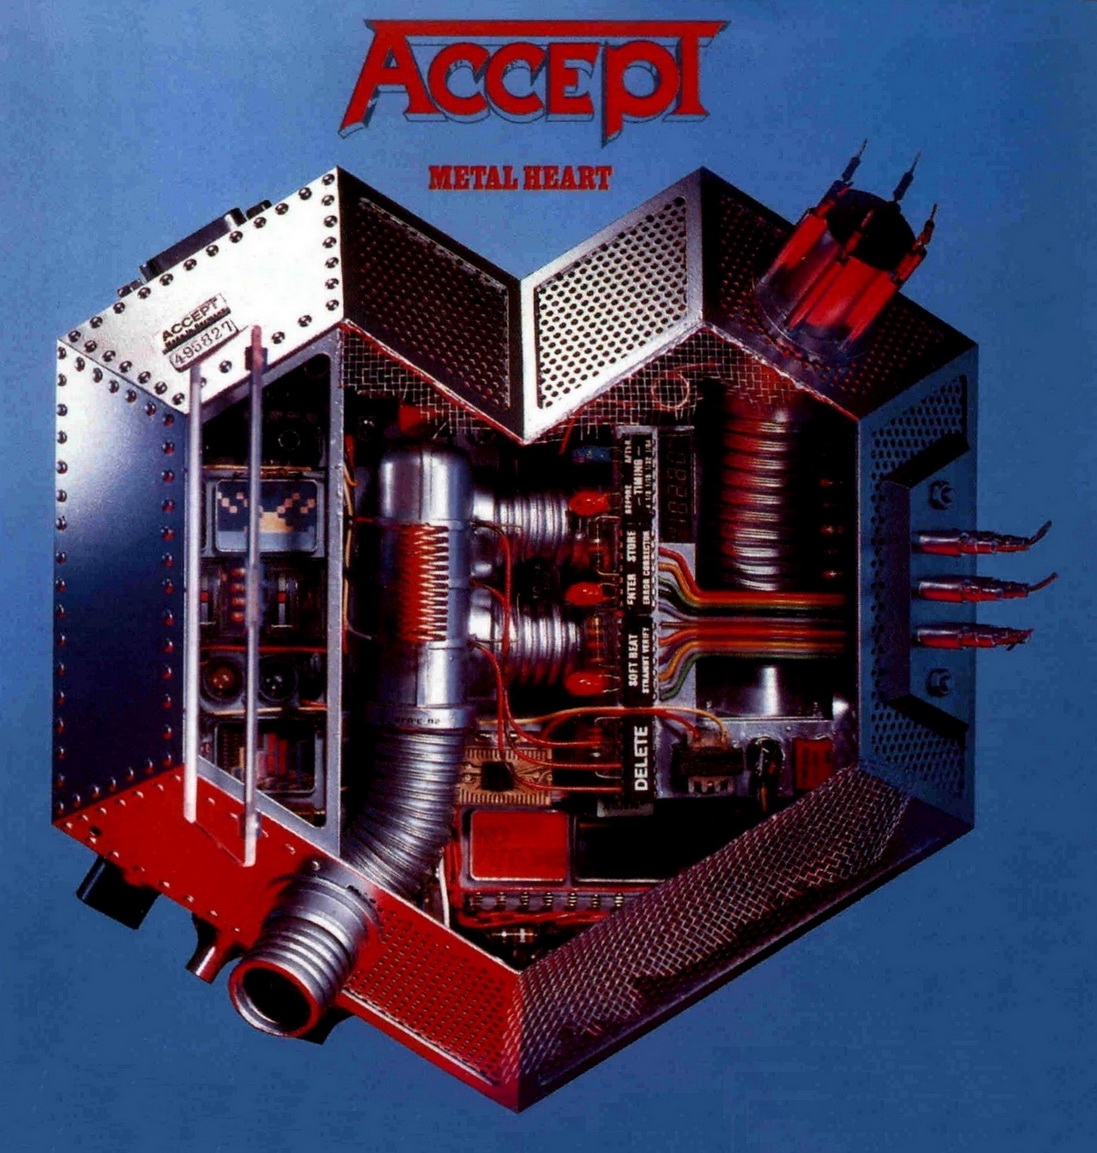  Accept - Metal Heart (1985)